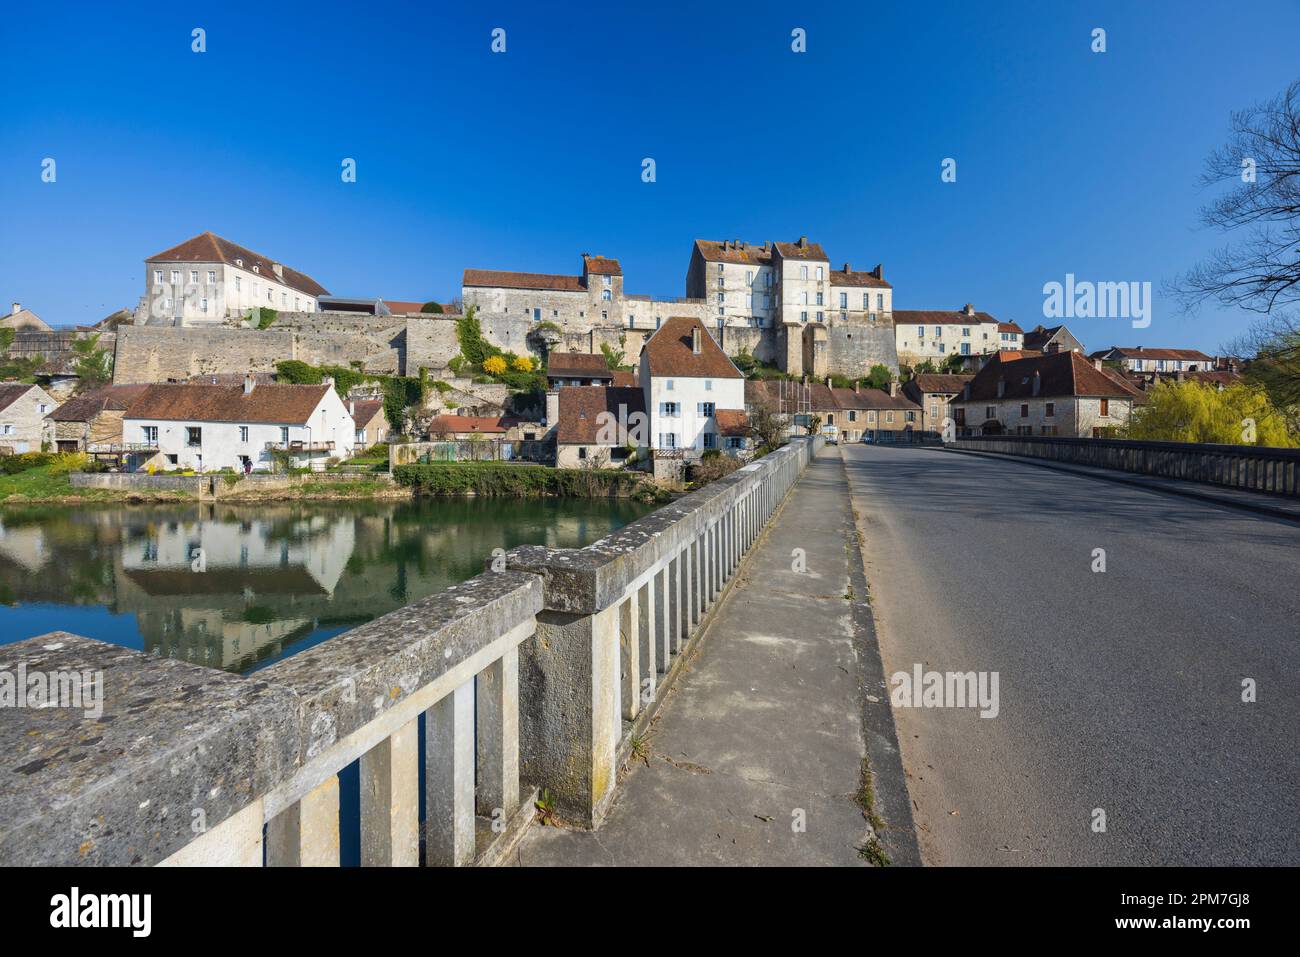 Petite ville typique de Pesmes avec la rivière L Orgon, haute-Saone, France. Banque D'Images